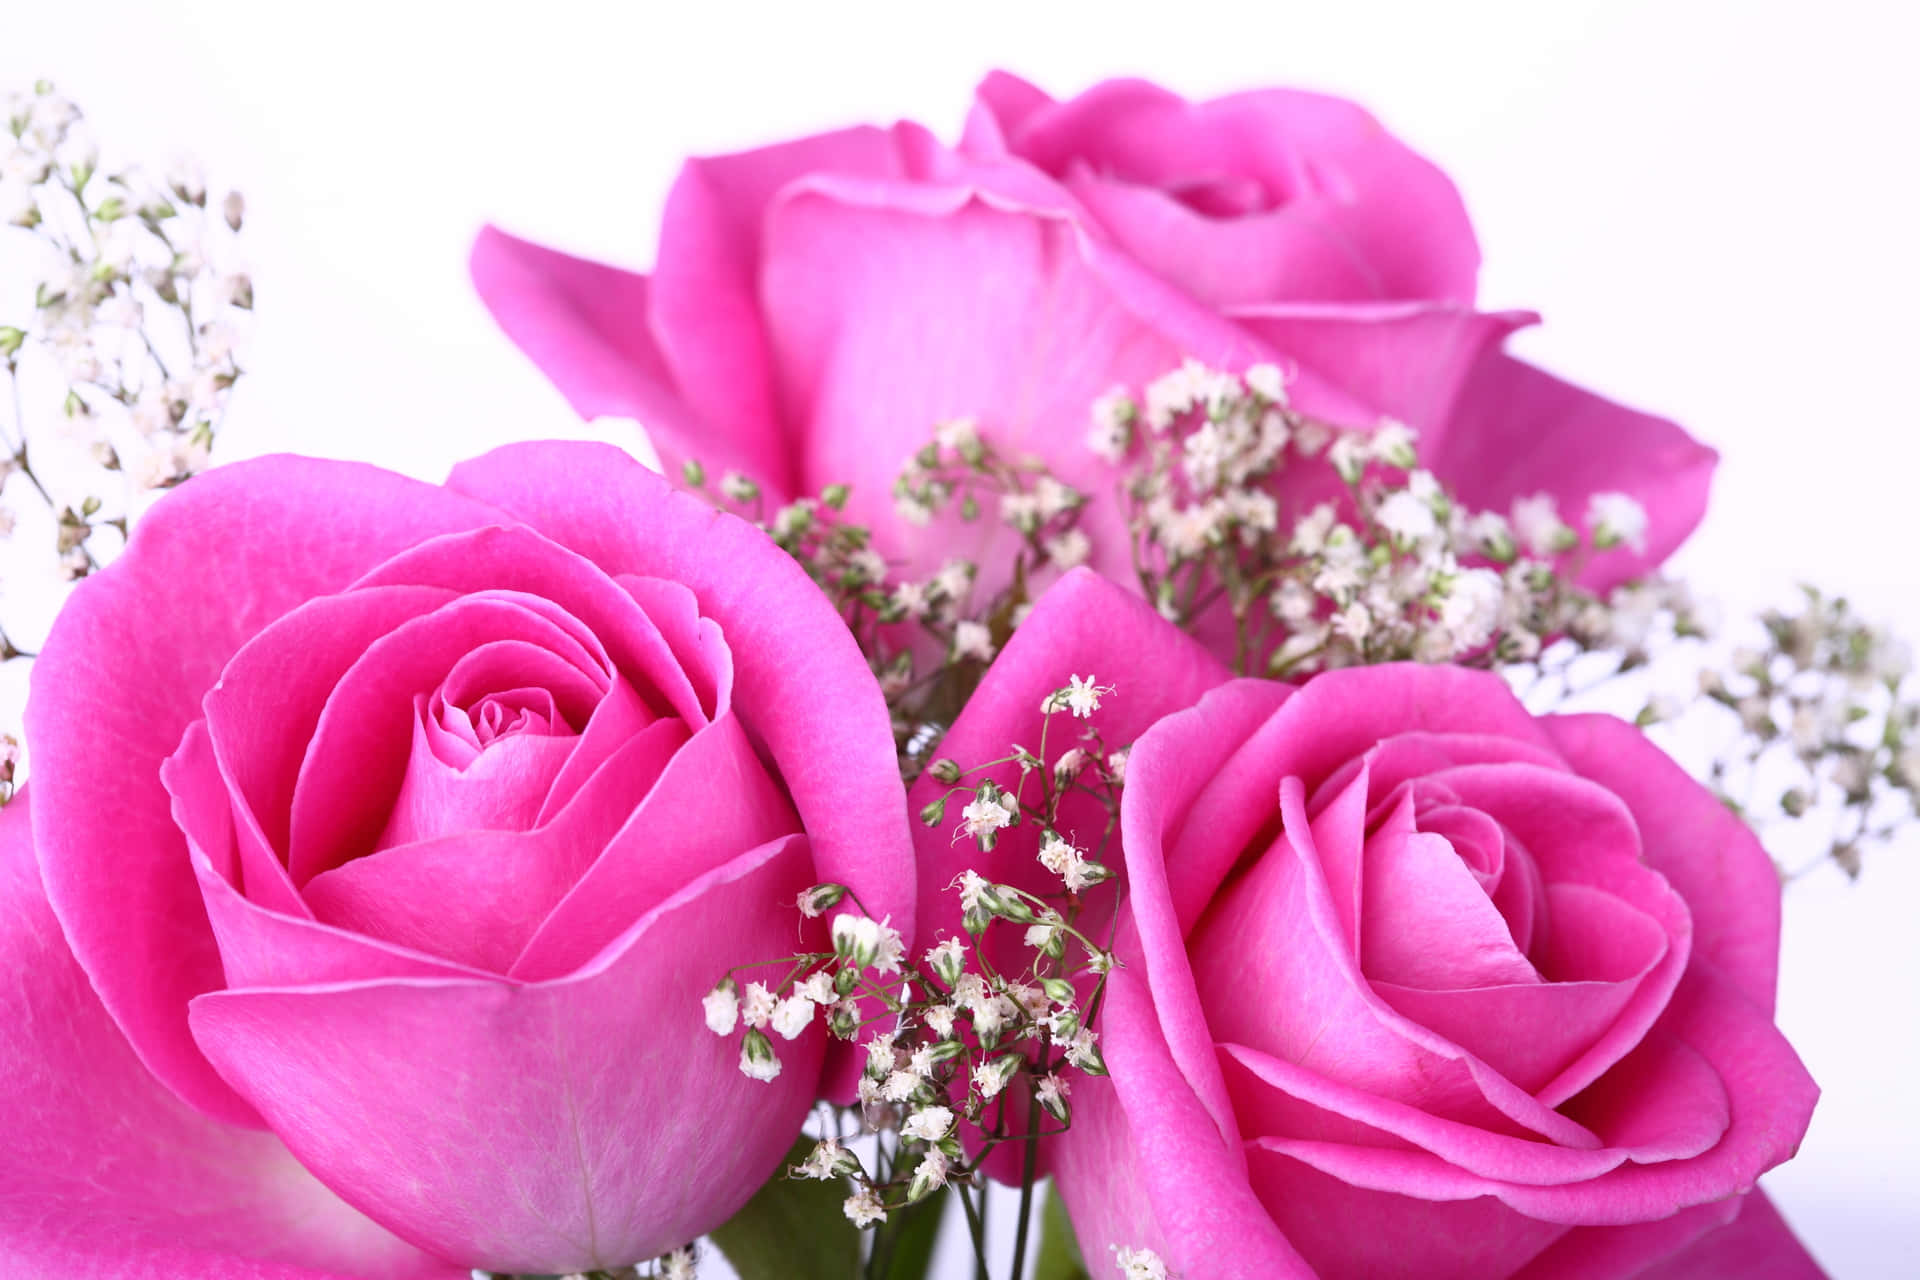 Unahermosa Rosa De Color Rosa En Plena Floración.